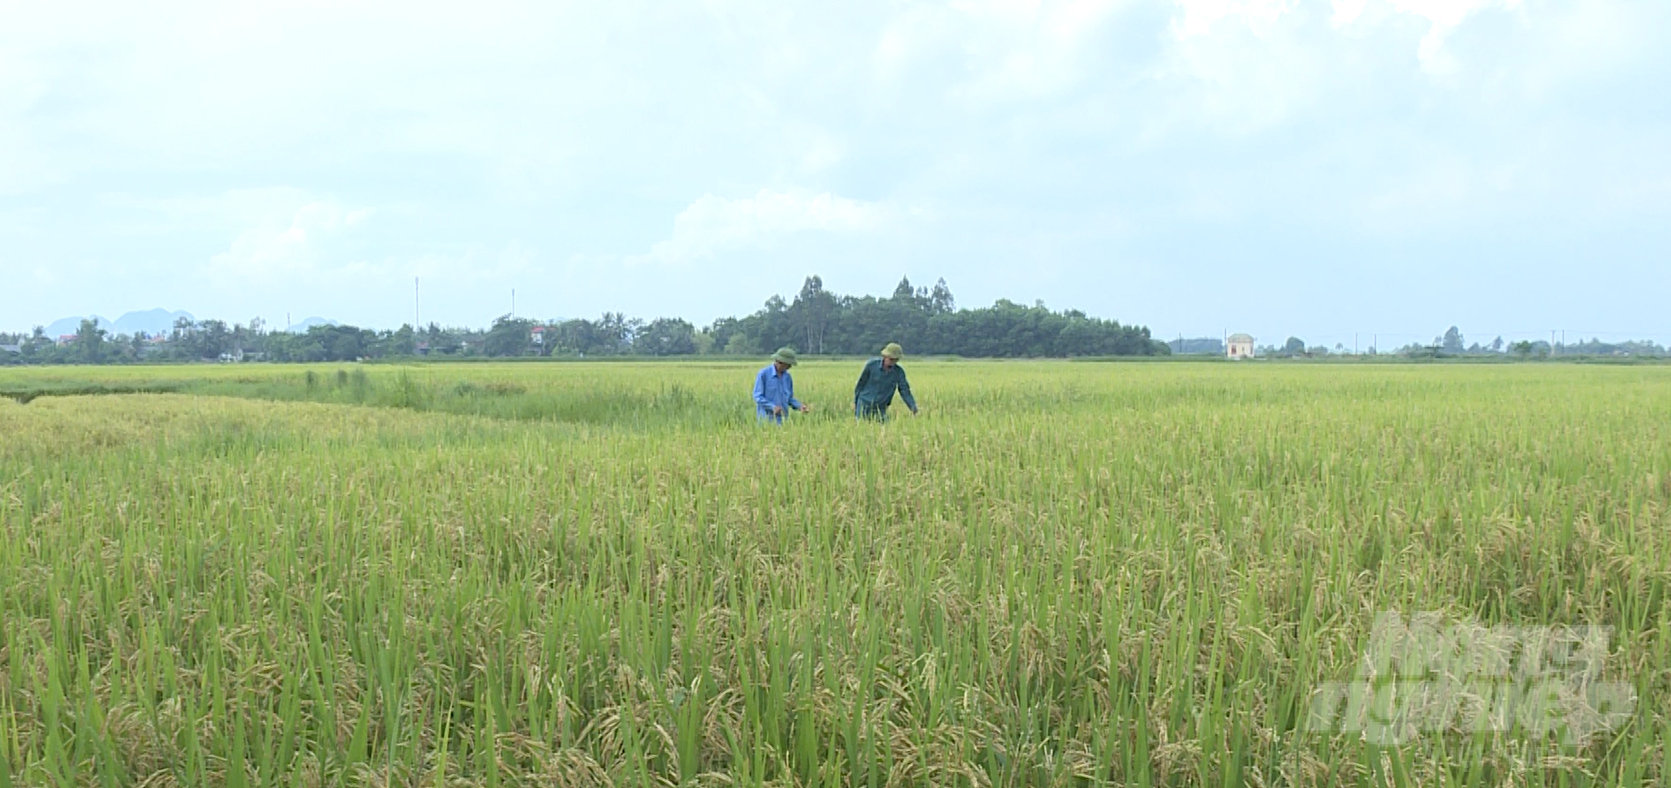 Cánh đồng lúa hữu cơ tại xã Tế Nông hứa hẹn vụ mùa năng suất cao. Ảnh: Quốc Toản.